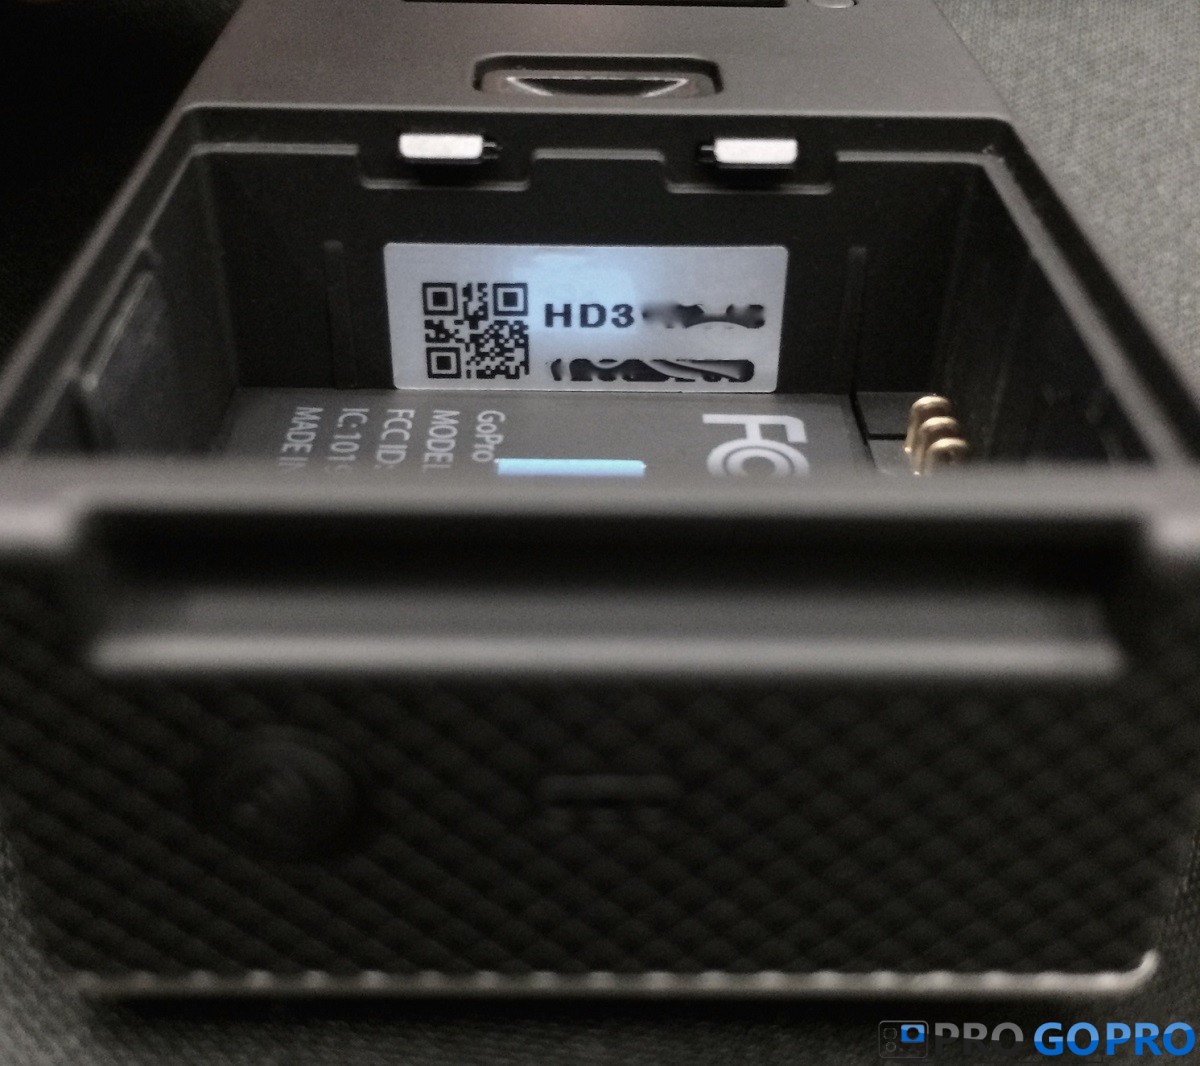 Серийный номер на камерах GoPro HERO3 всех моделей